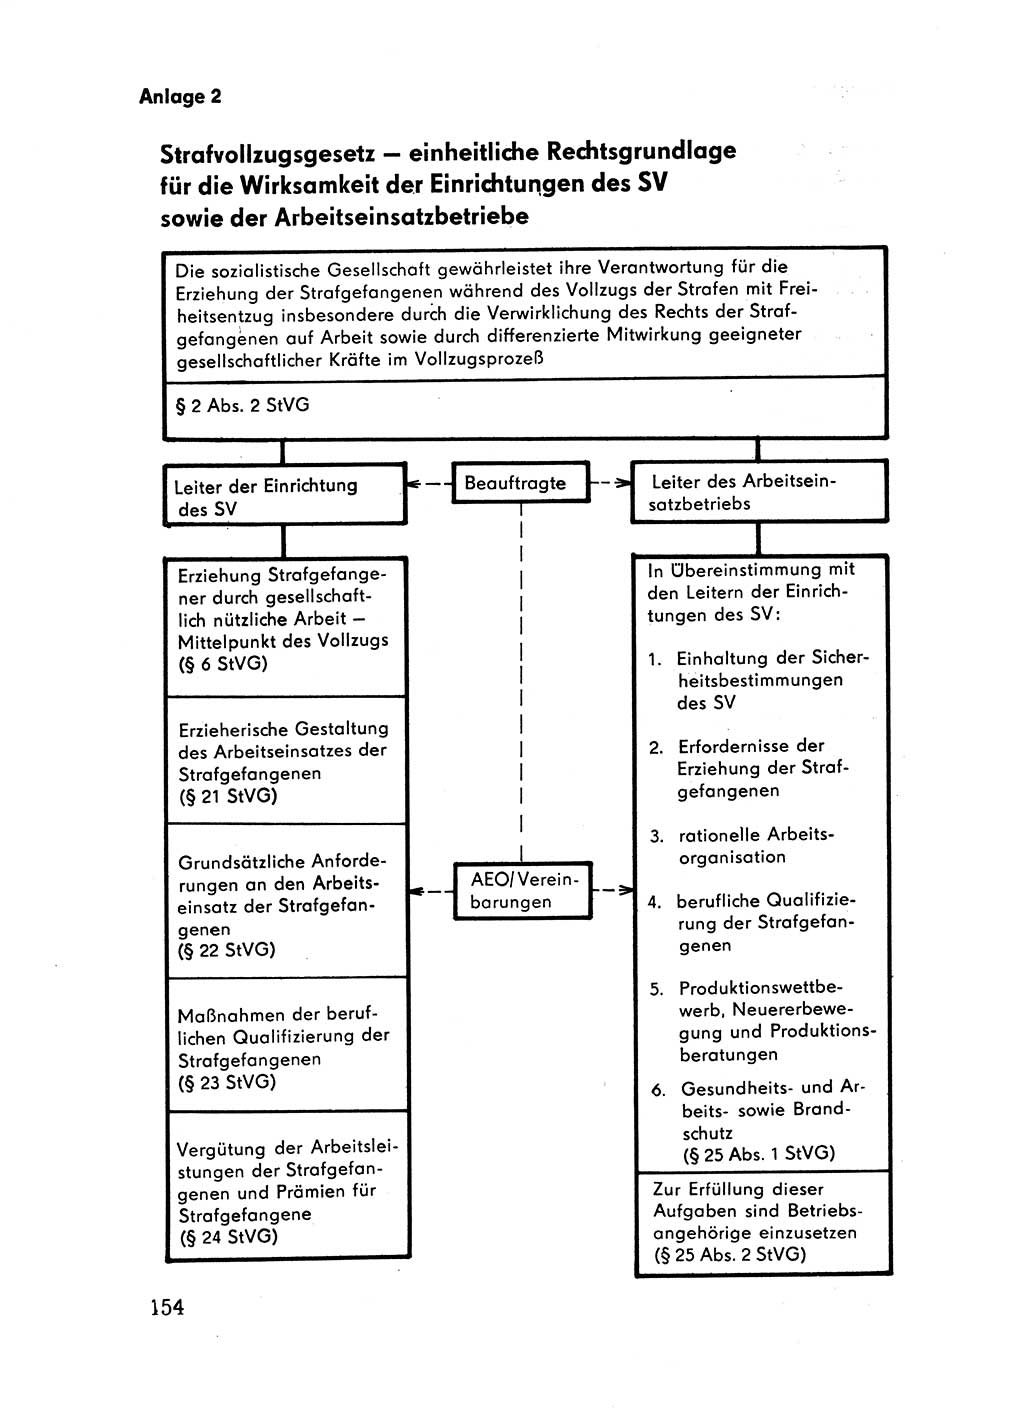 Handbuch für Betriebsangehörige, Abteilung Strafvollzug (SV) [Ministerium des Innern (MdI) Deutsche Demokratische Republik (DDR)] 1981, Seite 154 (Hb. BA Abt. SV MdI DDR 1981, S. 154)